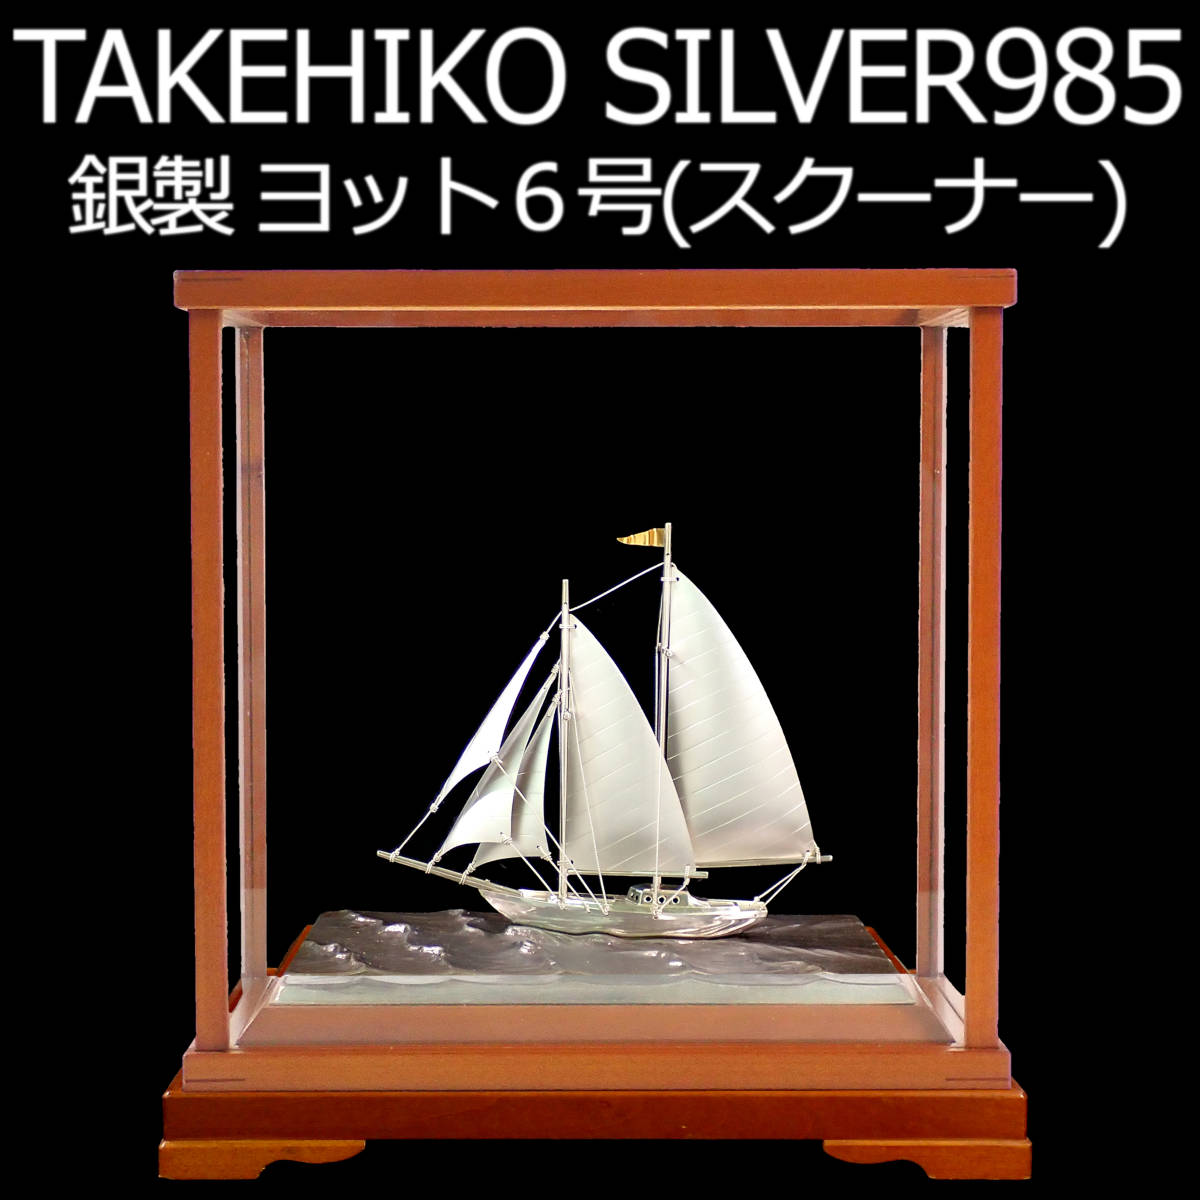 TAKEHIKO SILVER985 銀製 ヨット6号(スクーナー） スロープケース